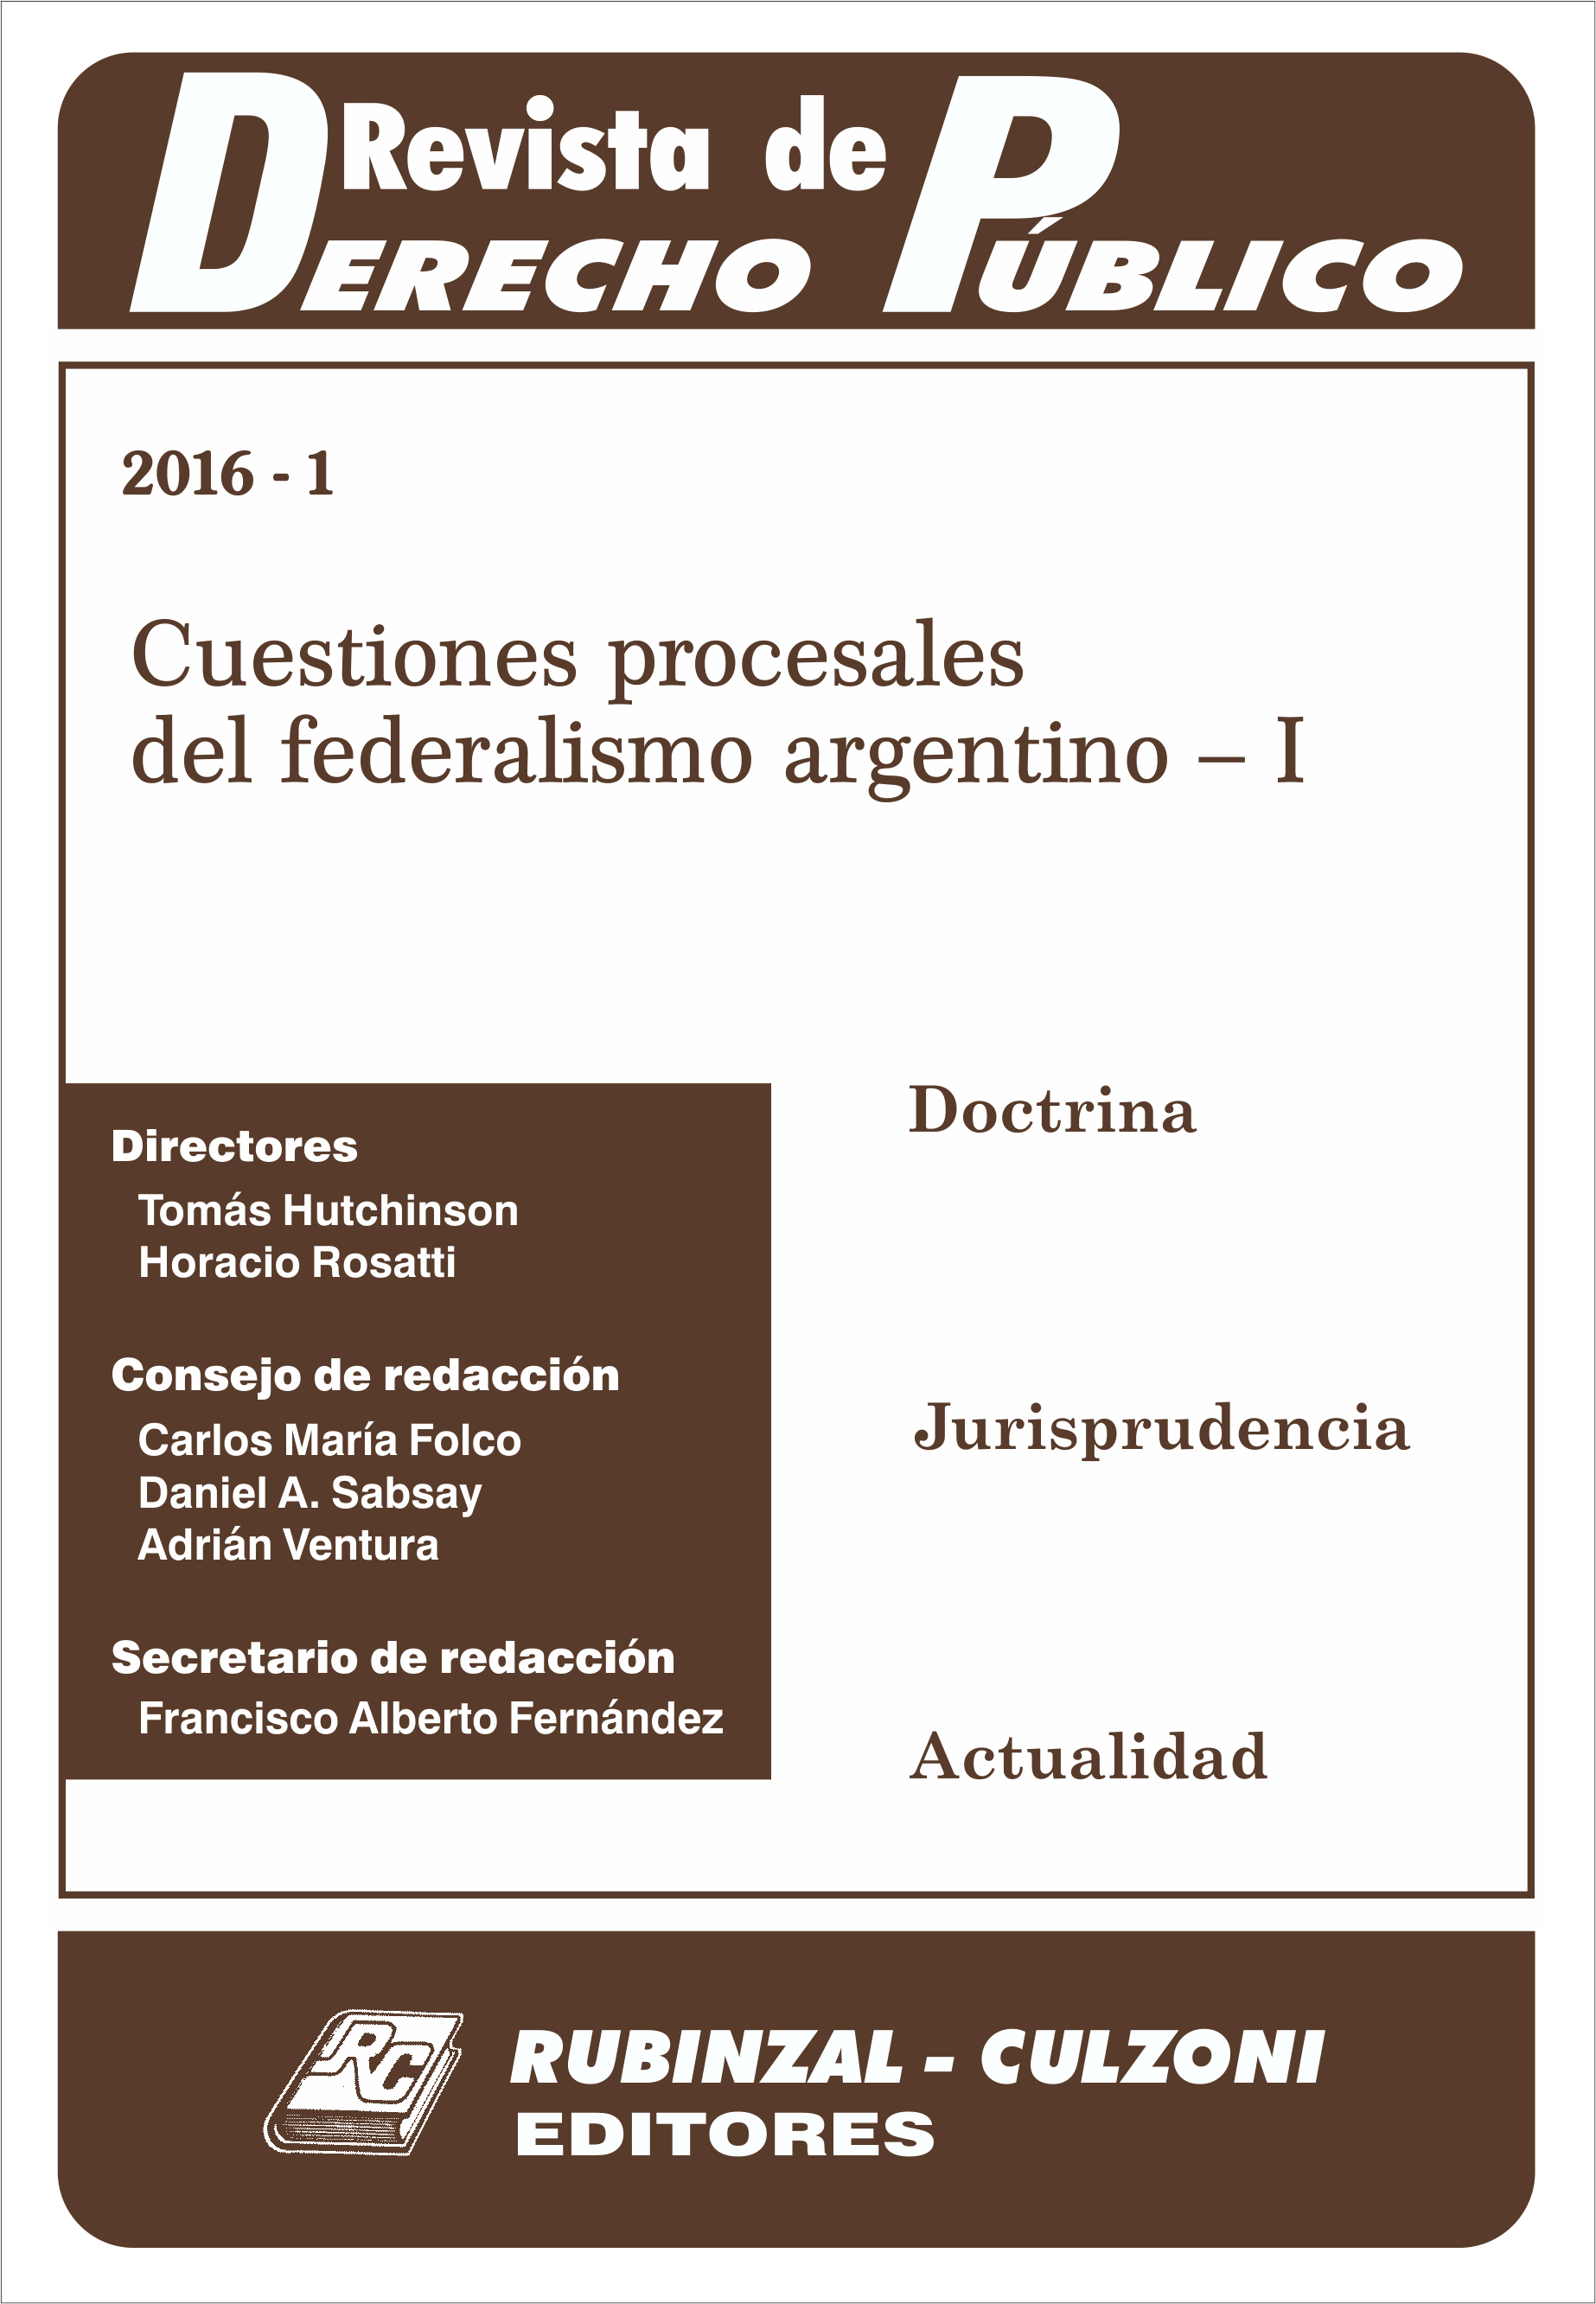 Cuestiones procesales del federalismo argentino - I [2016-1]